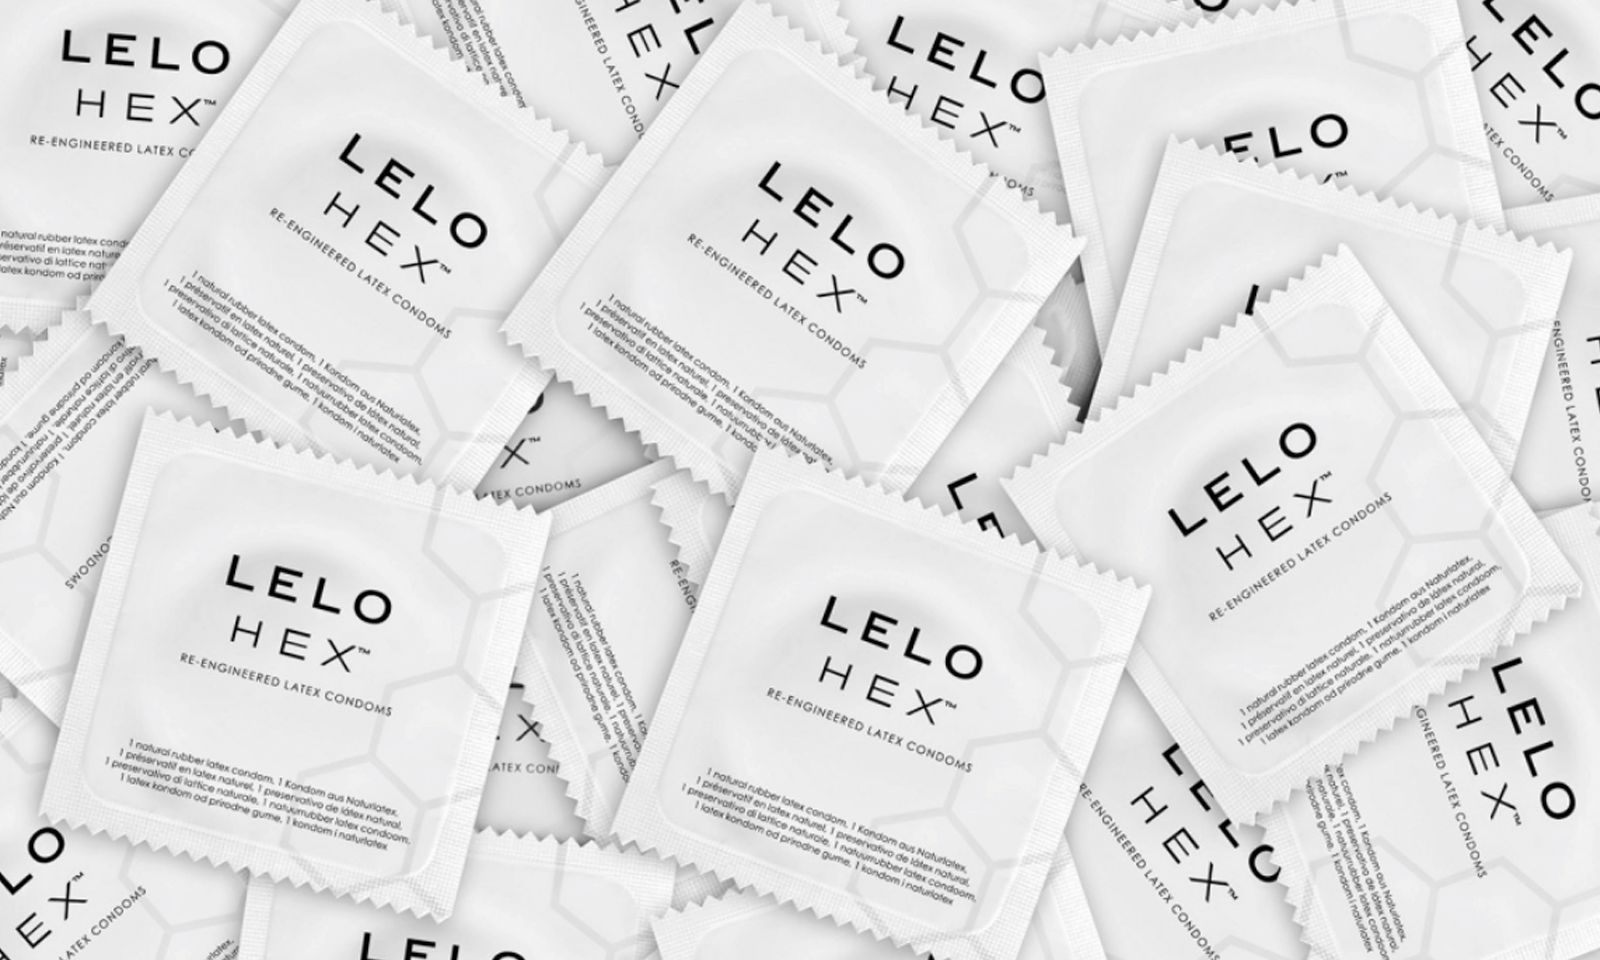 Rapper 50 Cent Endorses LELO’s Hex Condom